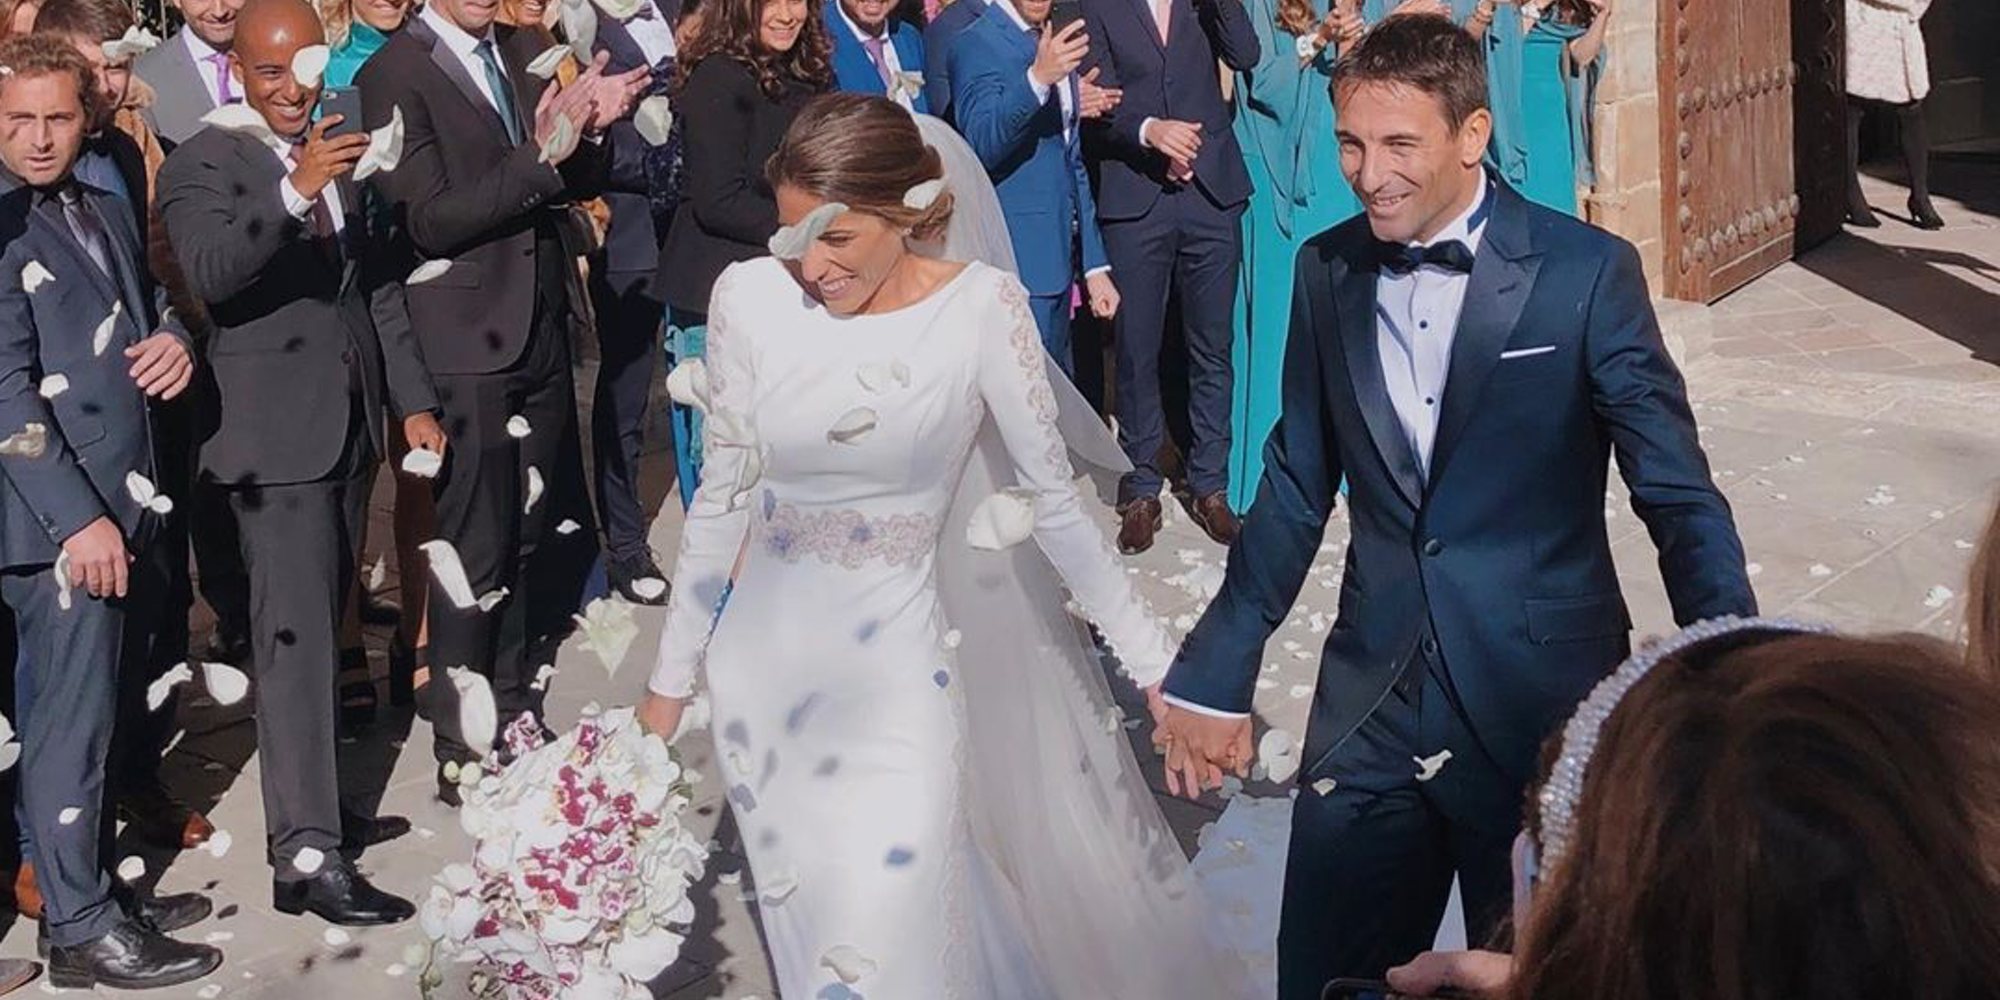 El tenista Tommy Robredo se casa con su novia Patricia Berga tras 6 años de relación